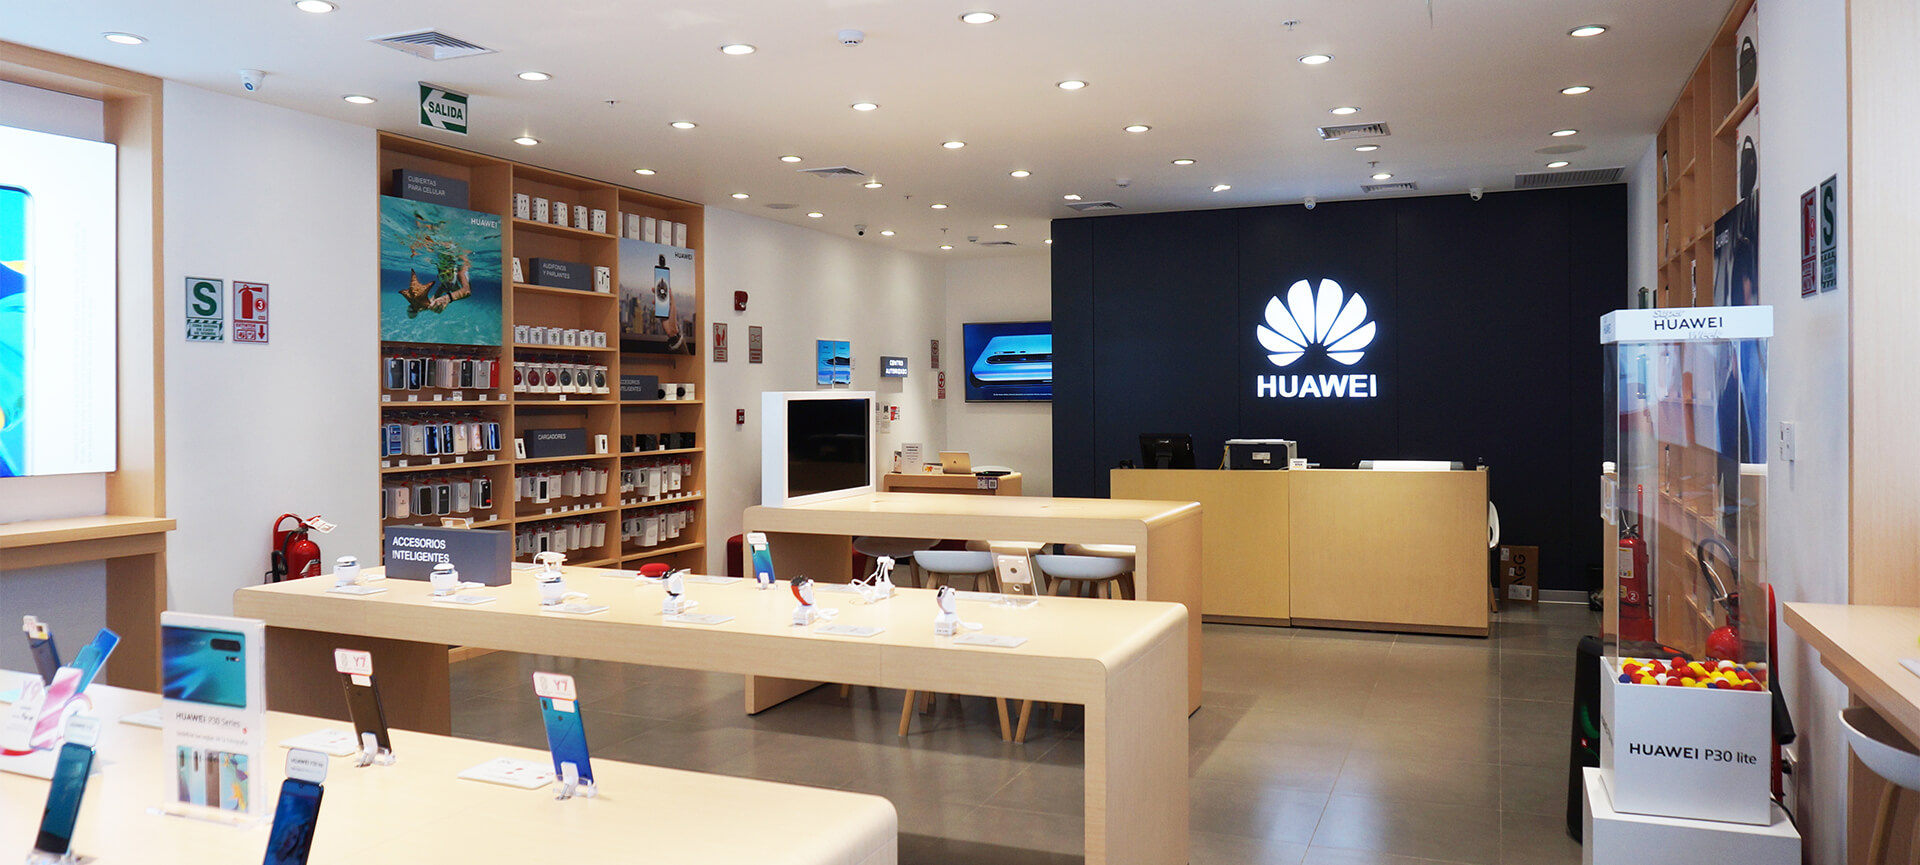 Foto de Huawei lanzará la casa por la ventana en la inauguración de su tienda online